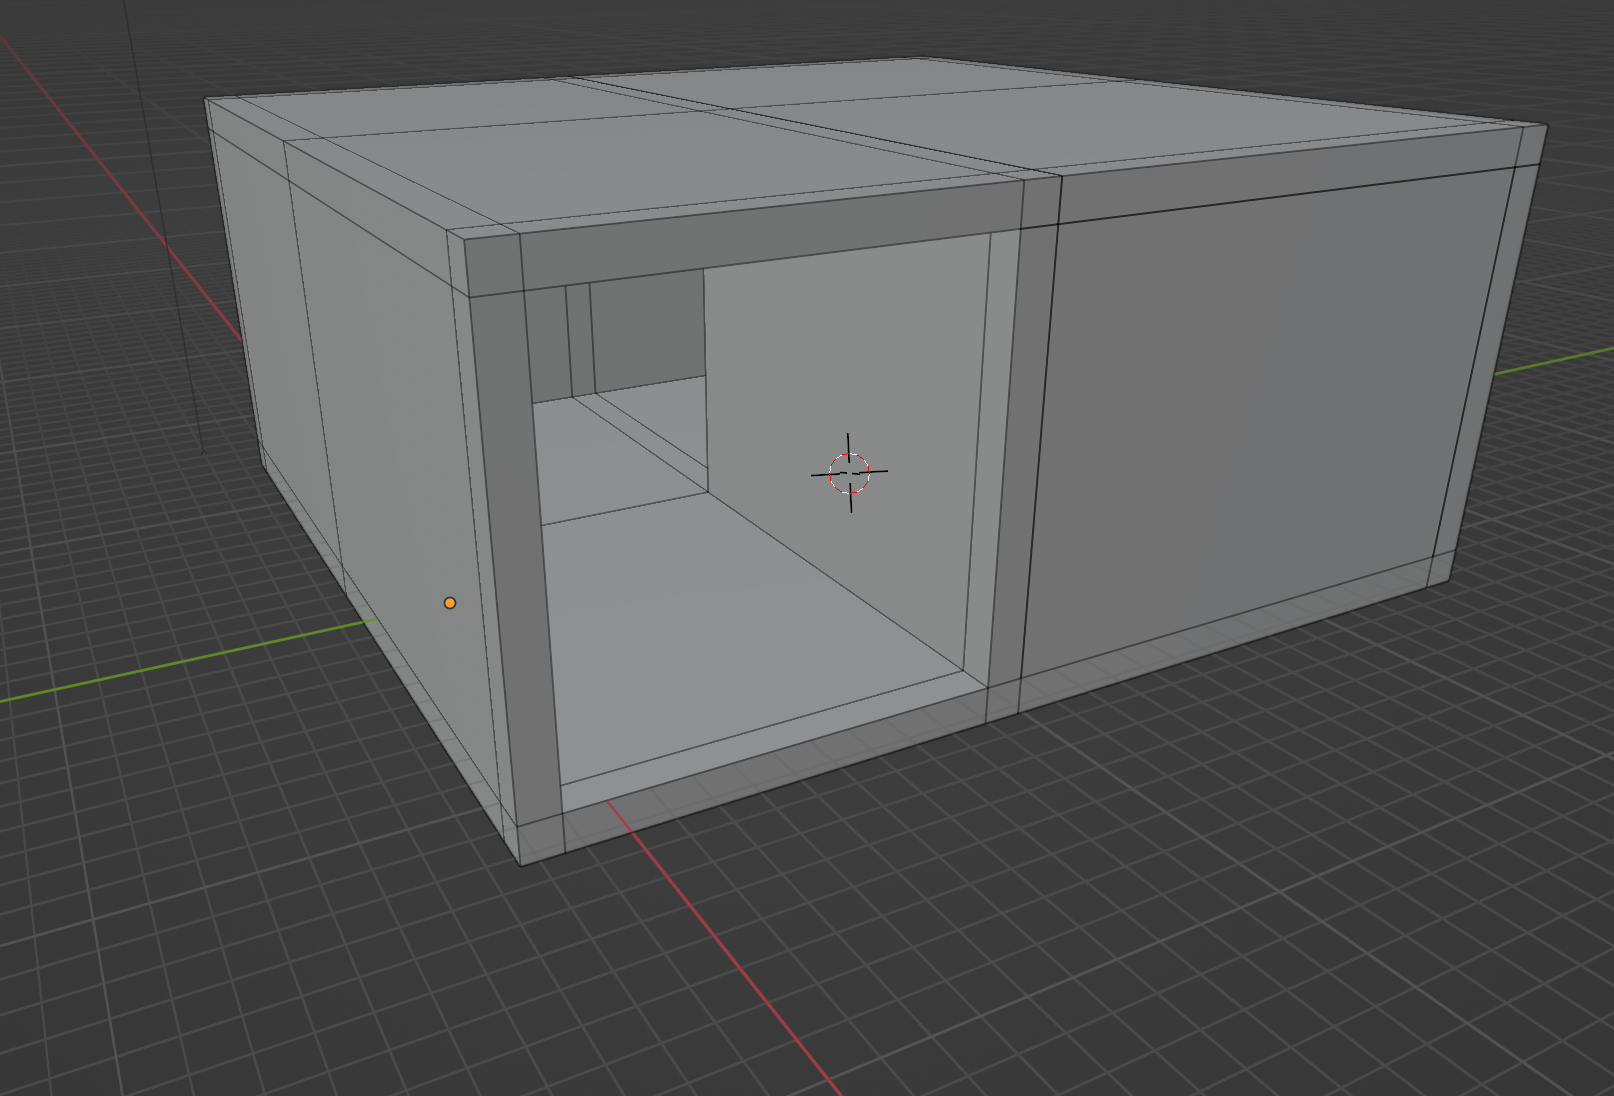 The edge-loop version of the prototype room in Blender